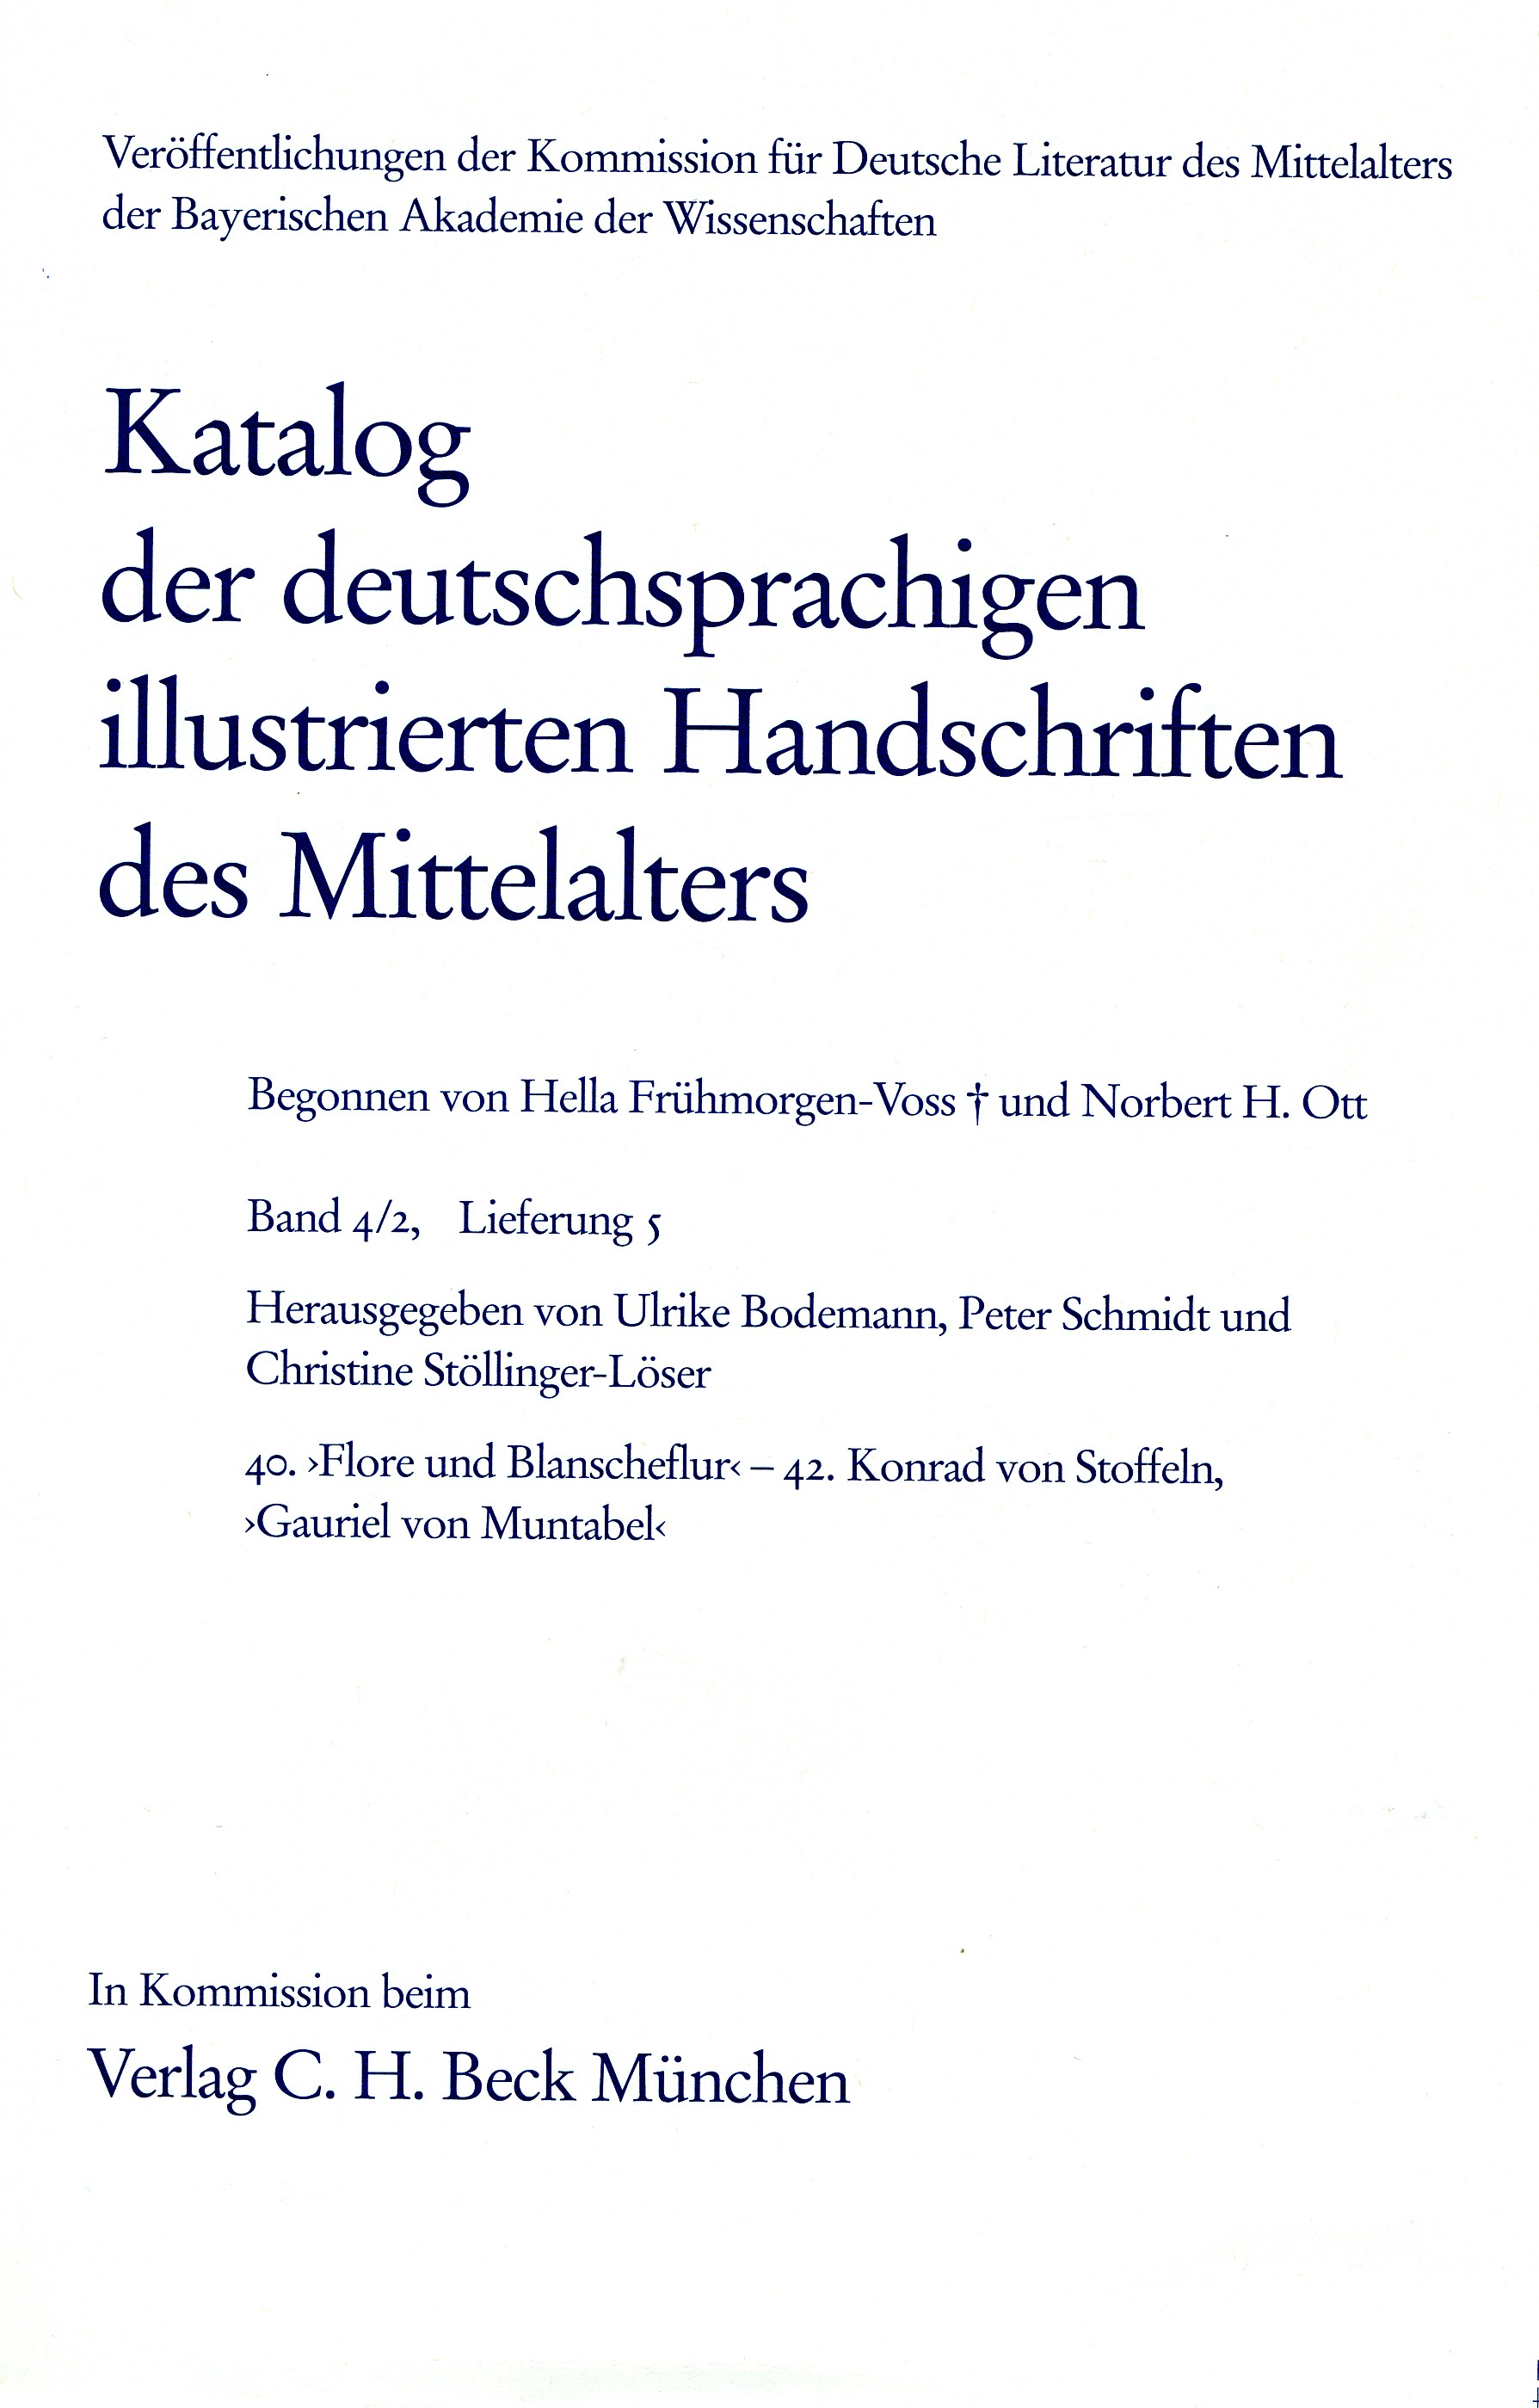 Cover:, Katalog der deutschsprachigen illustrierten Handschriften des Mittelalters Band 4/2, Lfg. 5: 40-42